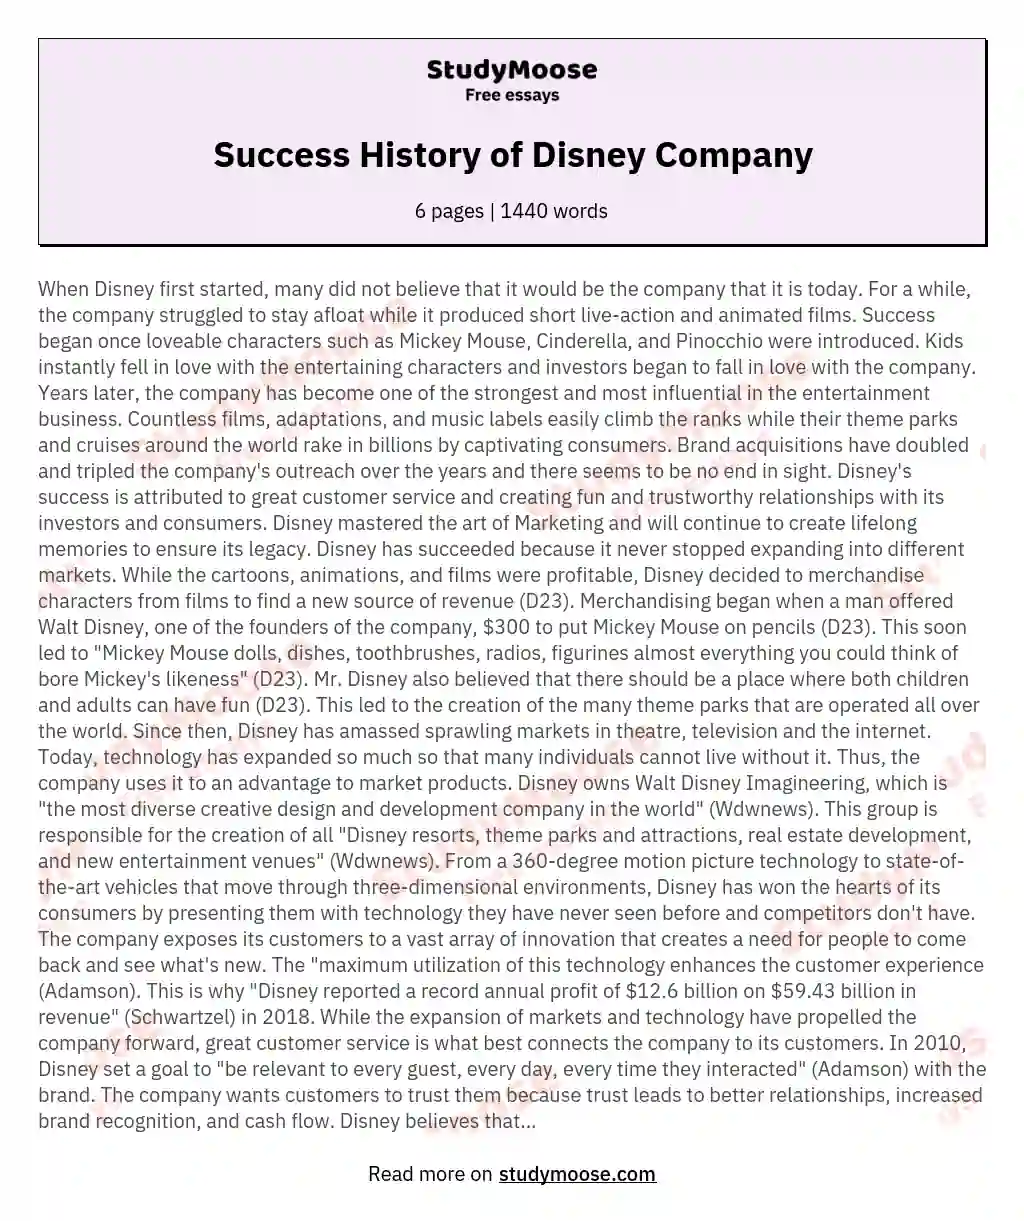 Success History of Disney Company essay